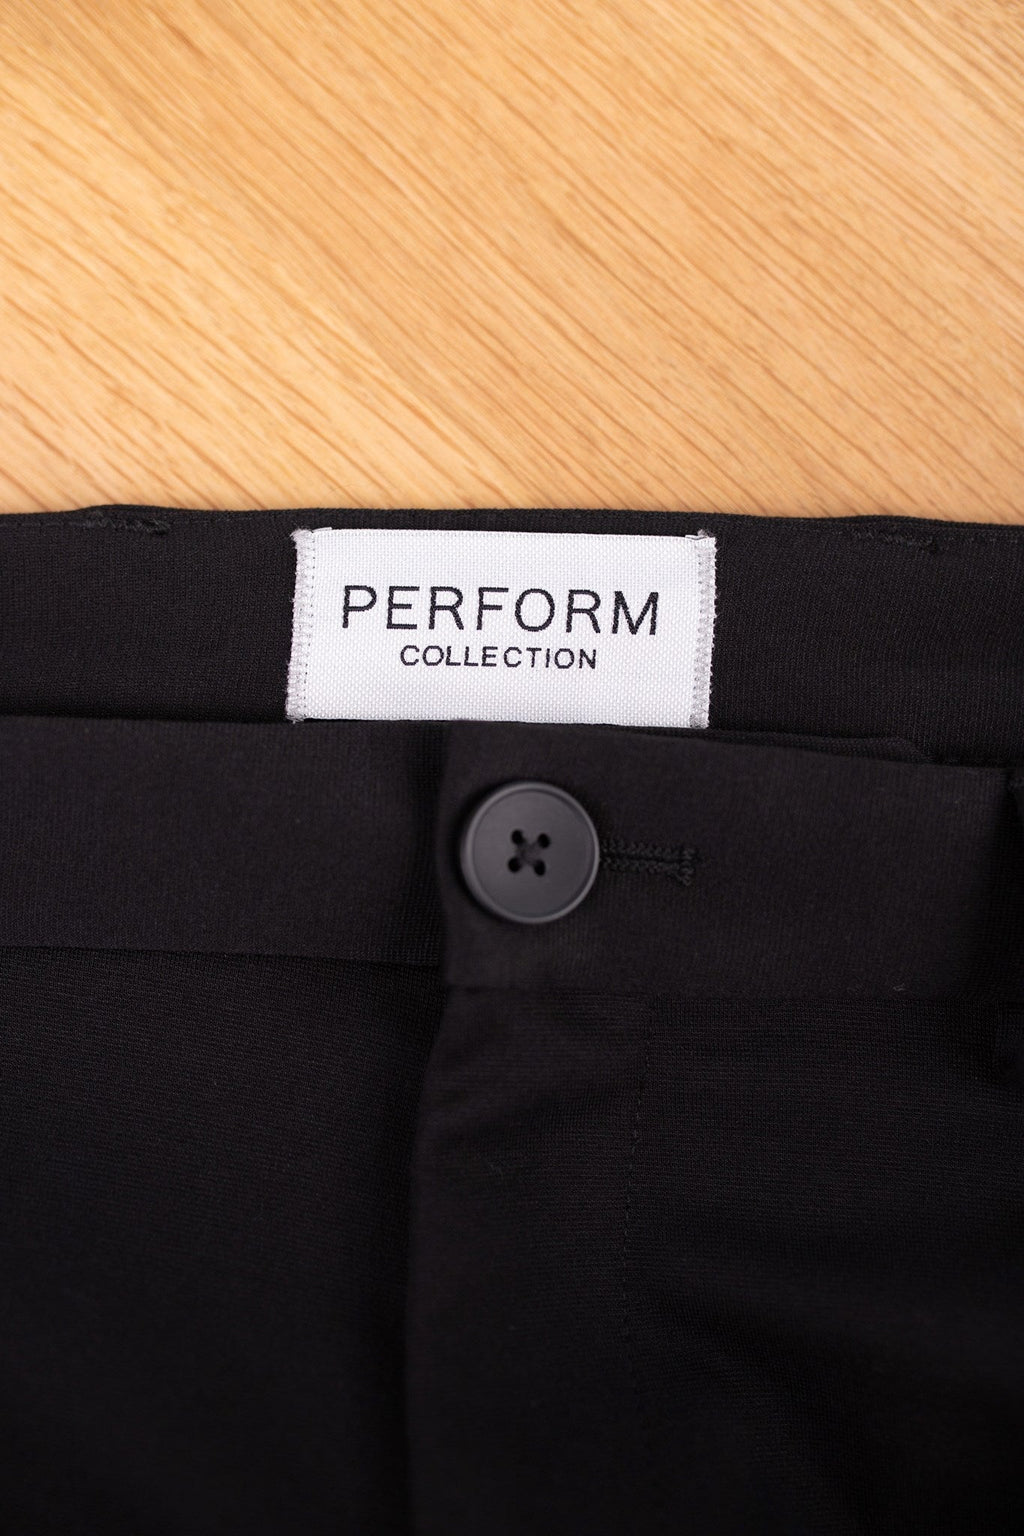 Originalne hlače za performanse (redovite) - crne